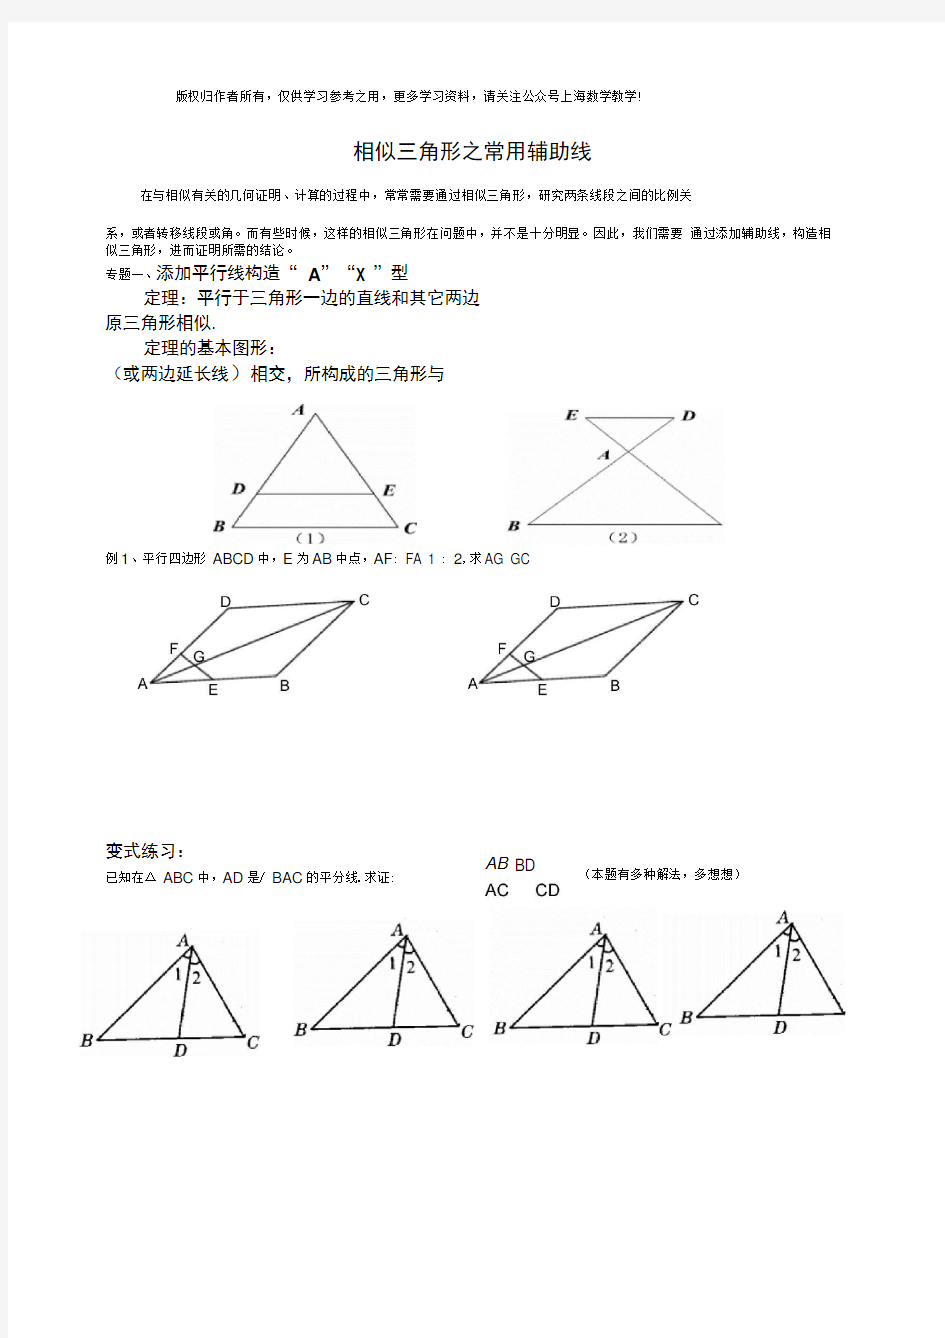 中考相似三角形之常用辅助线